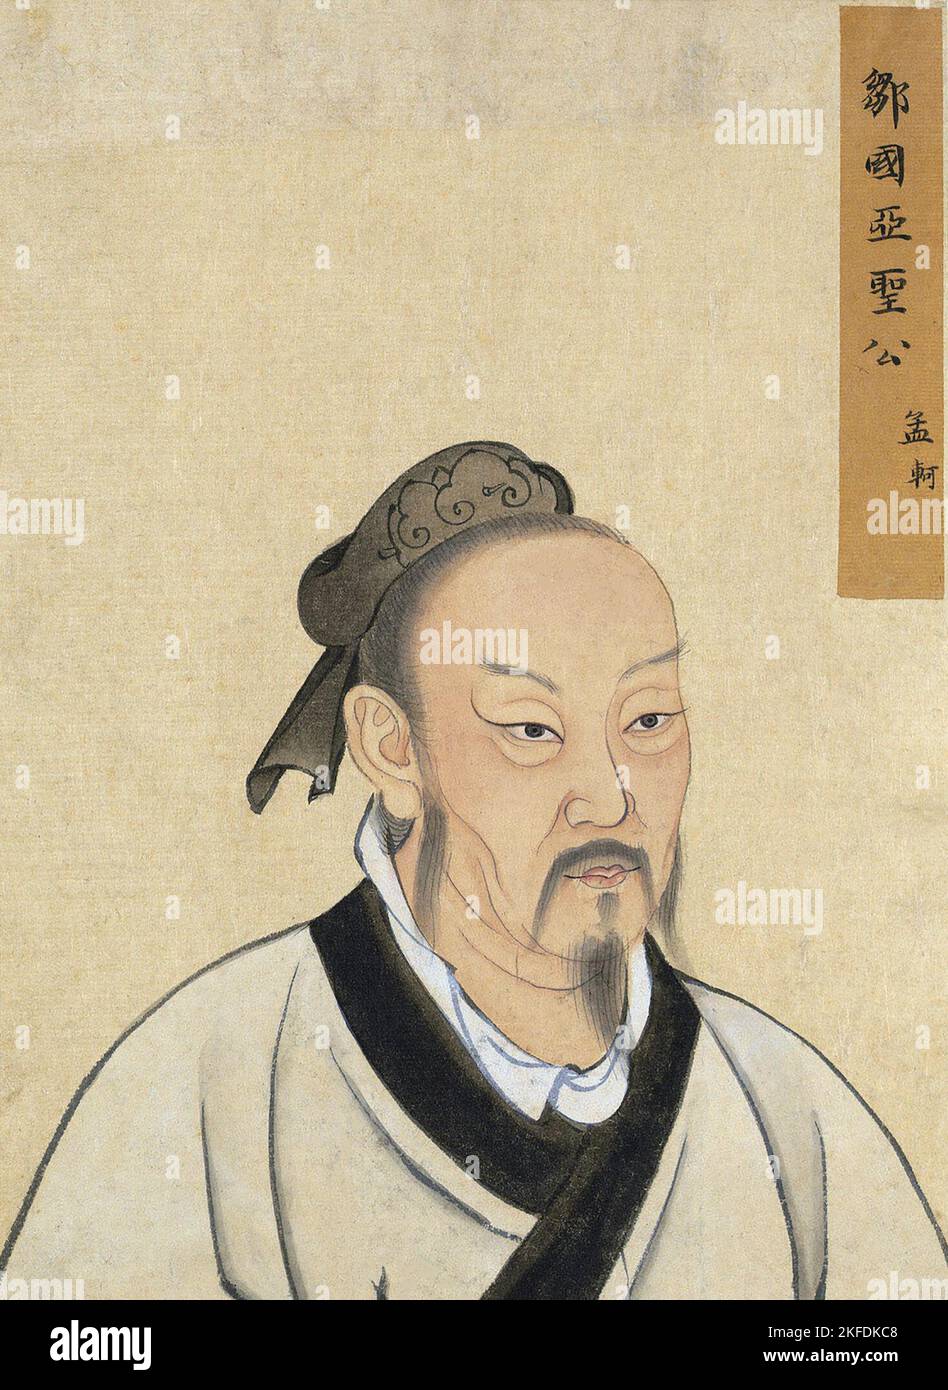 Cina: Mencius (289 a.C.) è stato un filosofo e discepolo cinese di Confucio. Yuan Dynasty (1279 - 1368) inchiostro su carta ritratto. Mencius, conosciuto anche con il suo nome di nascita Meng Ke o Ko, è nato nello Stato di Zou, che ora forma il territorio della città a livello di contea di Zoucheng; originariamente Zouxian, provincia di Shandong, a soli 30 km a sud di Qufu, luogo di nascita di Confucio. Fu filosofo e saggio itinerante cinese, e uno dei principali interpreti del Confucianesimo. Presumibilmente, era allievo del nipote di Confucio, Zisi. Foto Stock